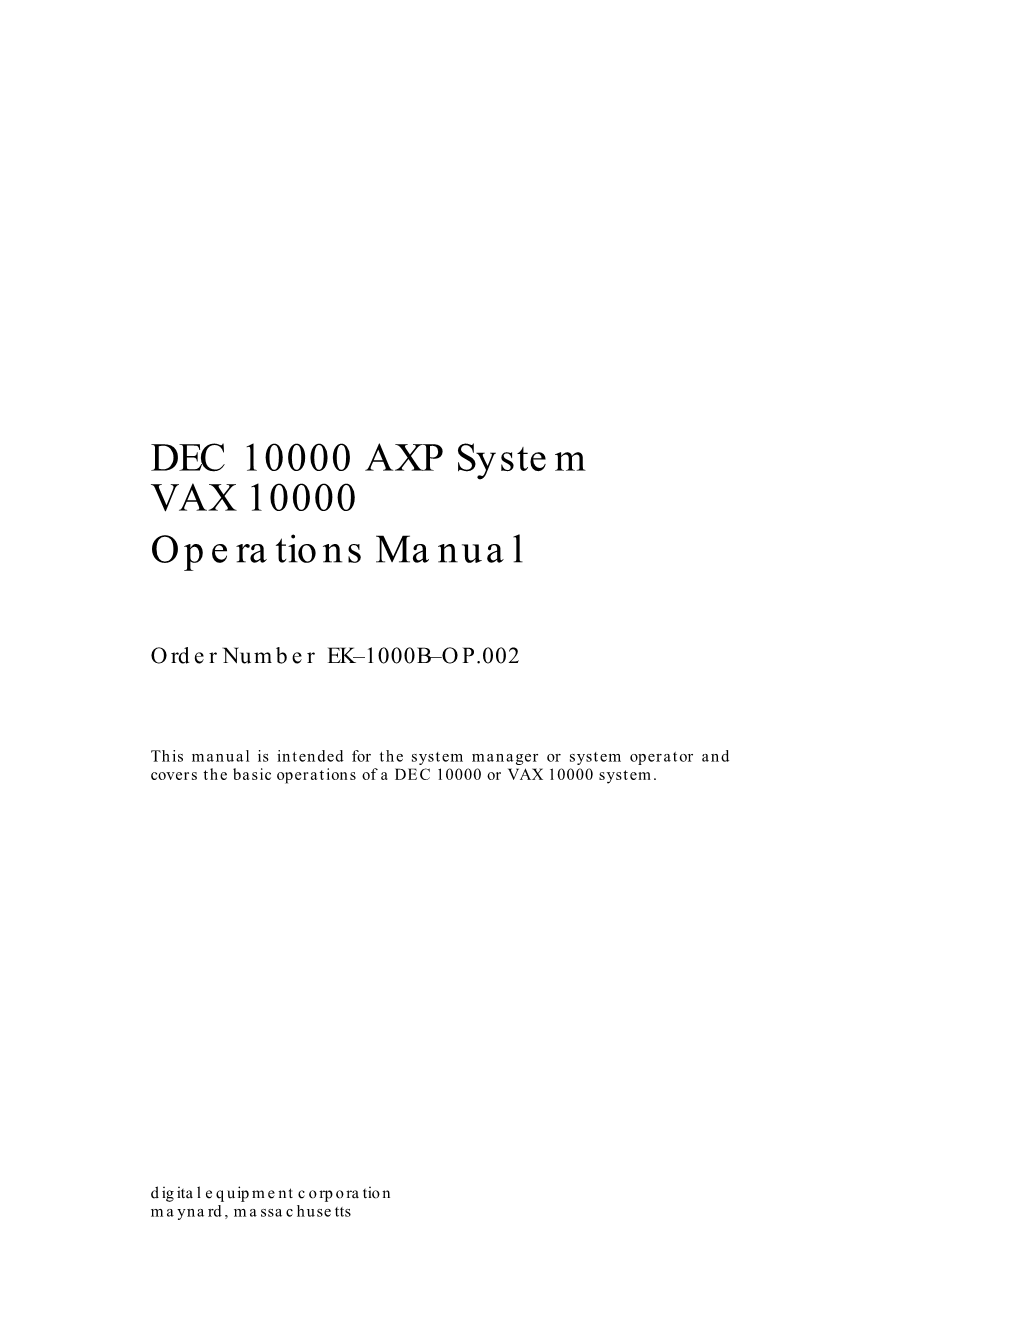 DEC 10000 AXP, VAX 10000 Operations Manual